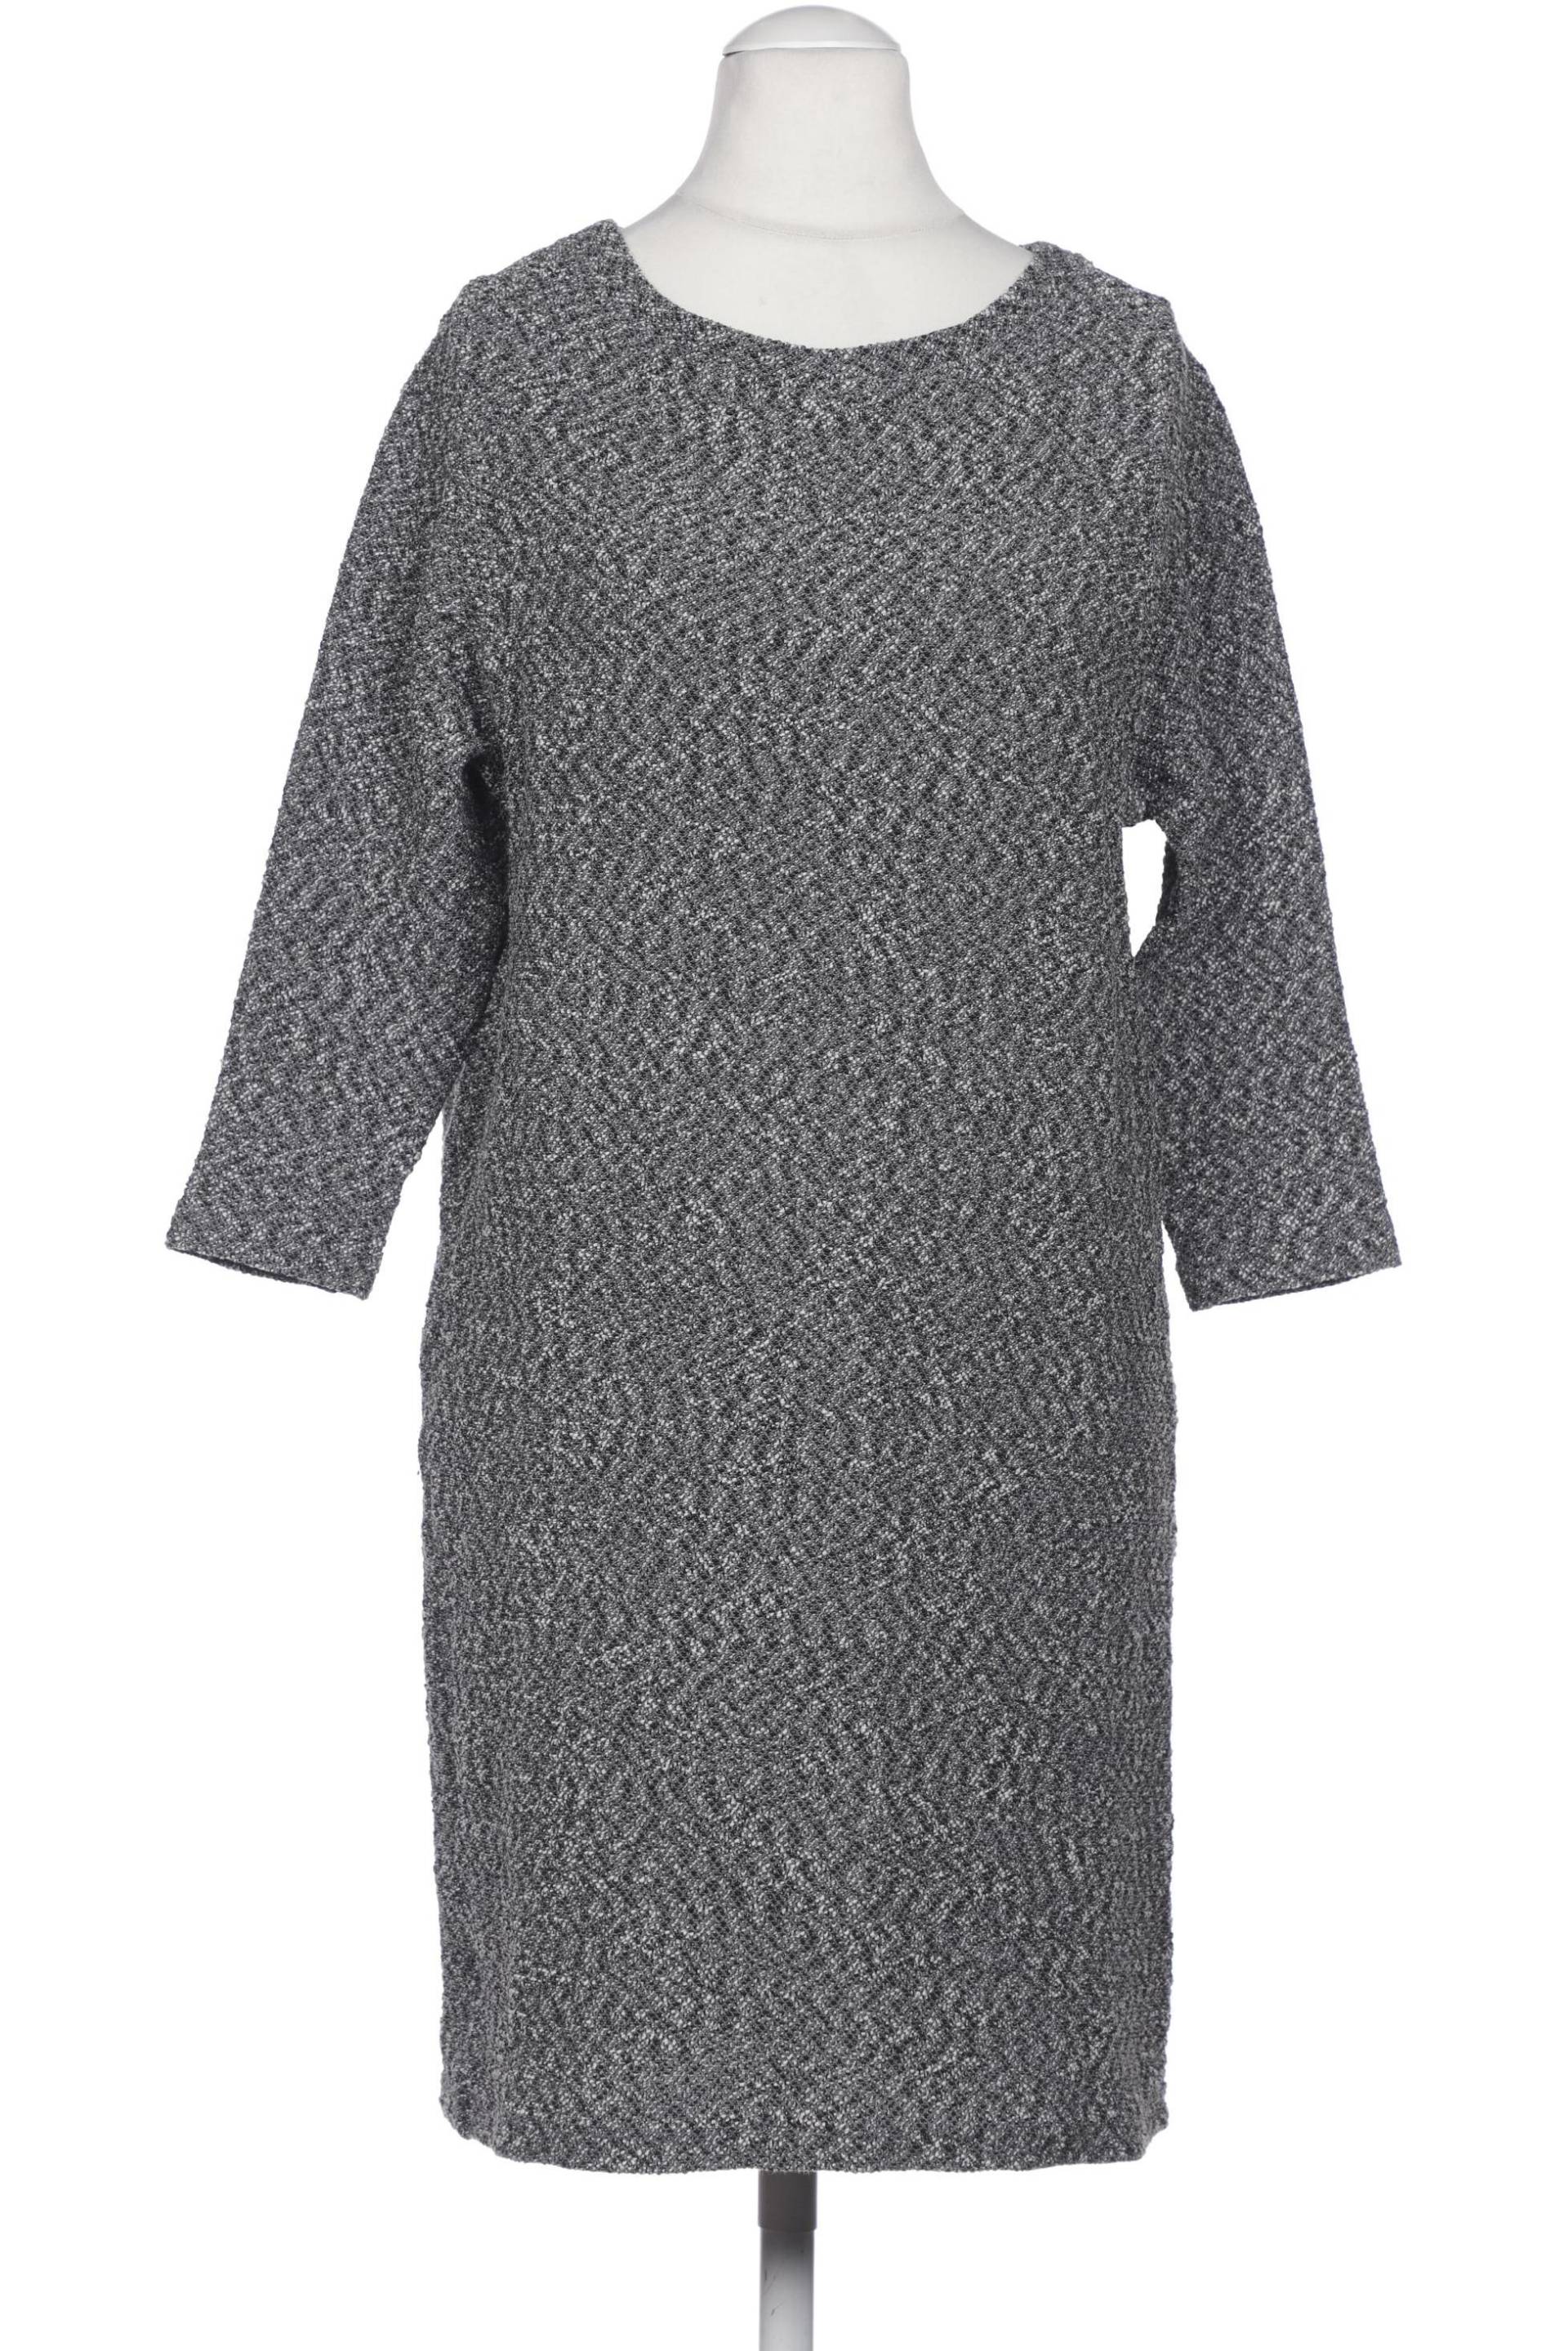 COS Damen Kleid, grau, Gr. 36 von COS